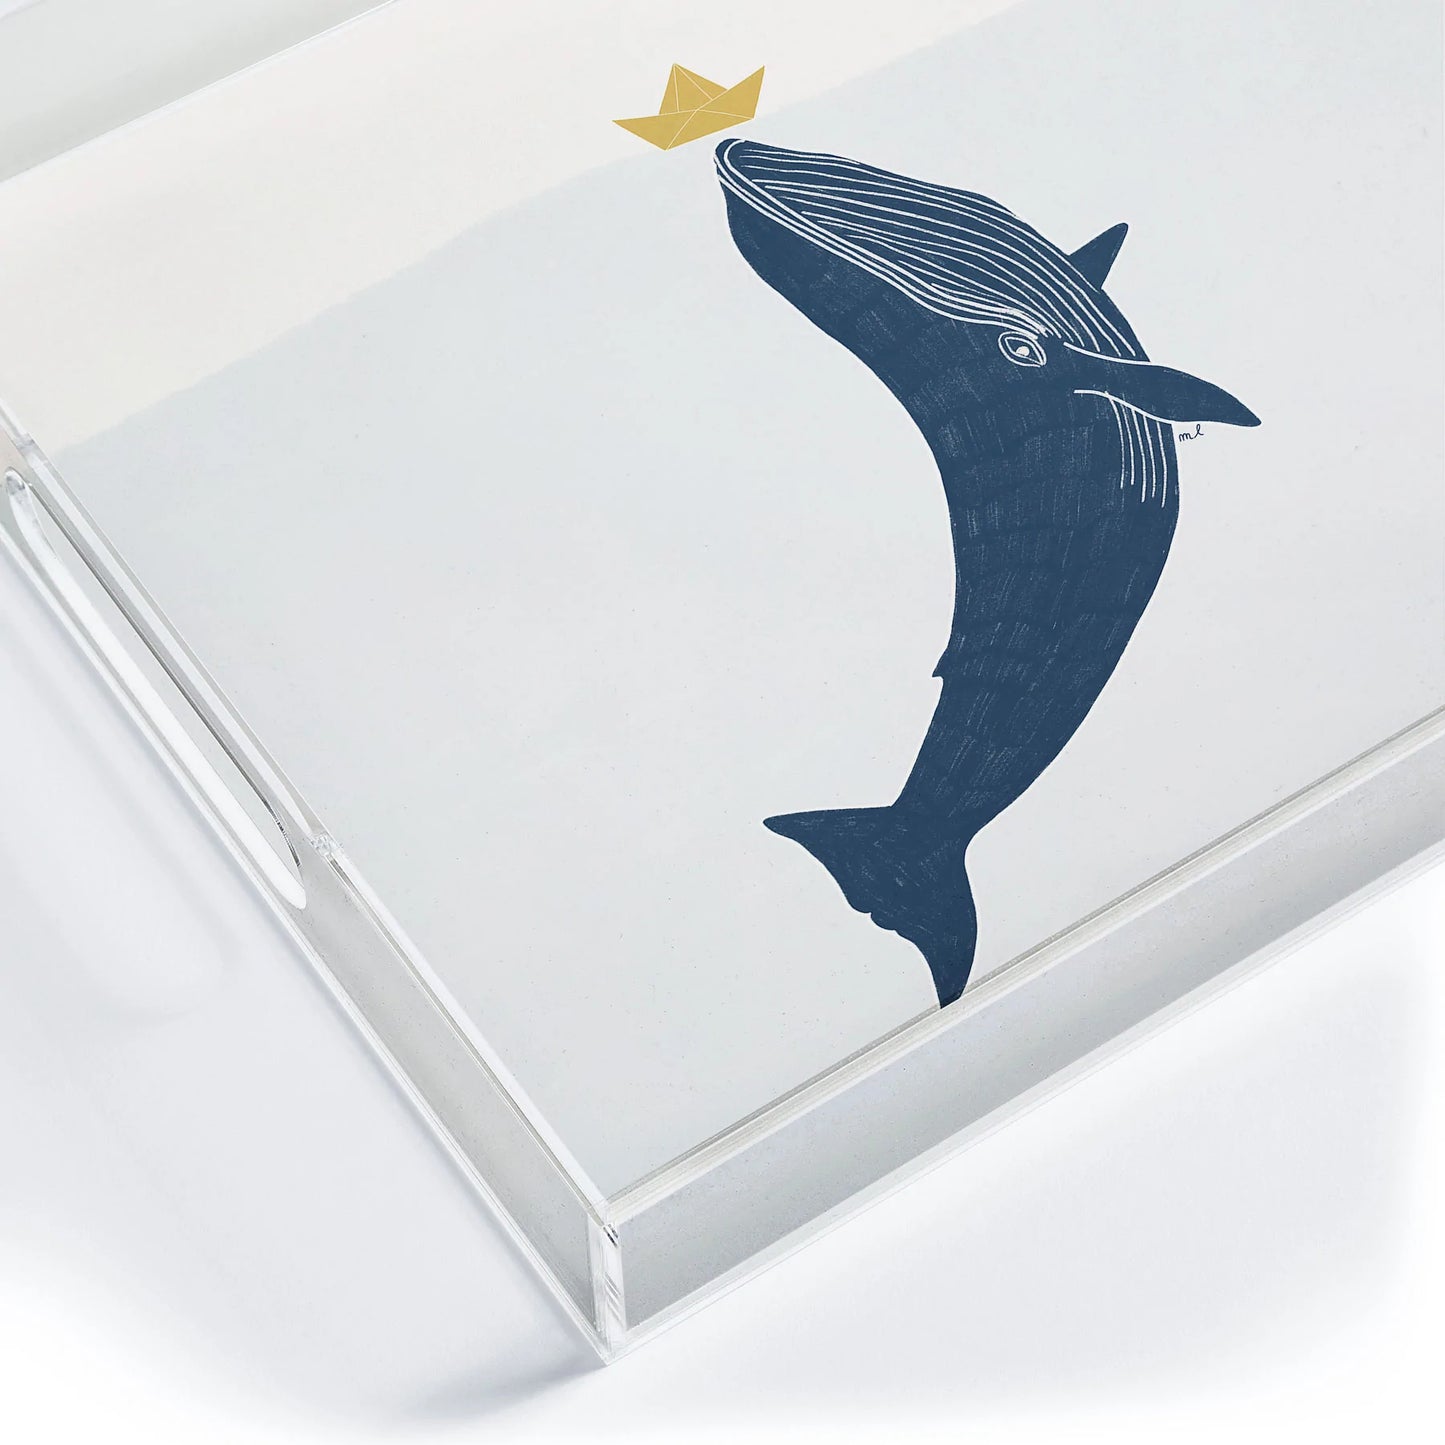 Blue Whale Acrylic Tray - Medium w/Handles